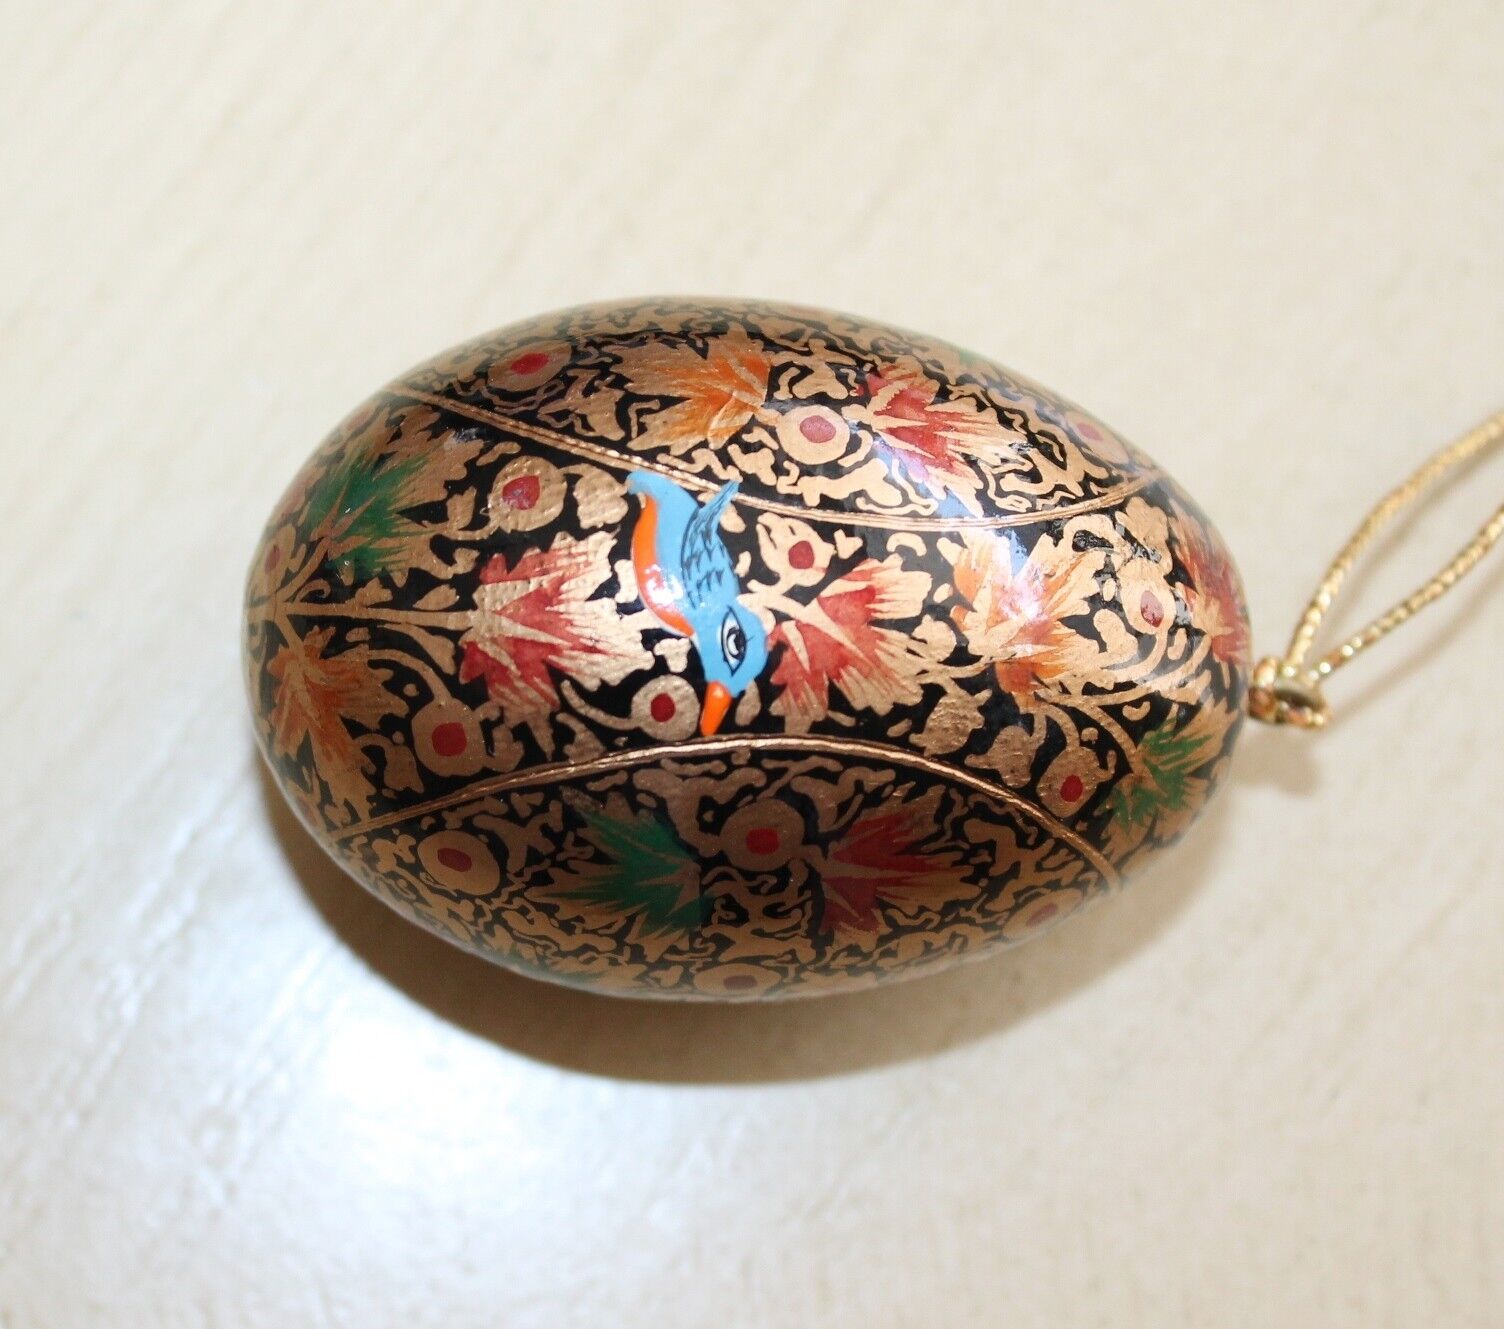 Vintage Wood or Porcelain Easter Egg Colorful Paint Ornament Leaf Bird